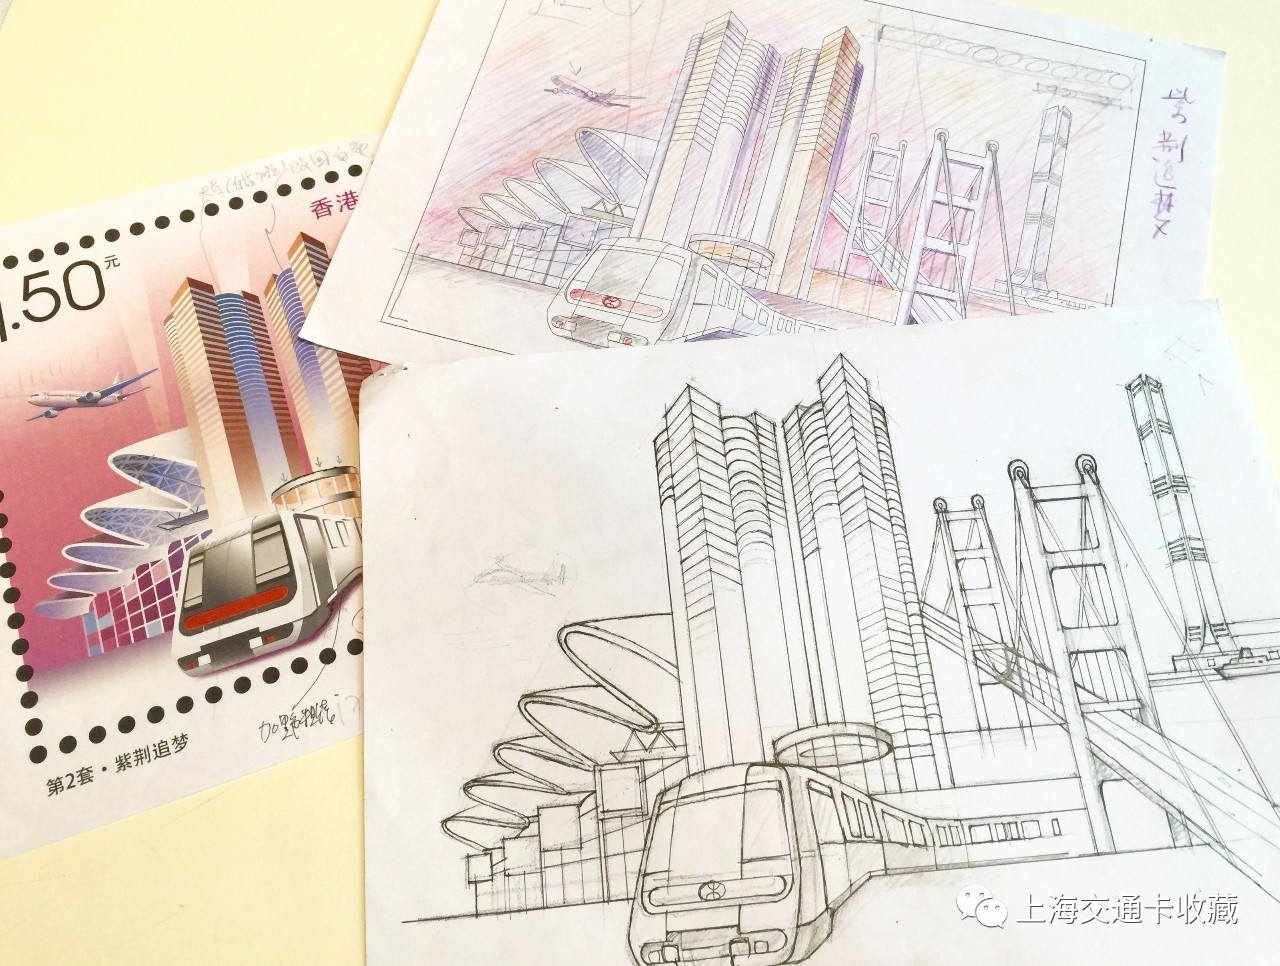 喜讯| 龙邮香江 紫荆追梦——韩秉华大师设计邮票背后的故事